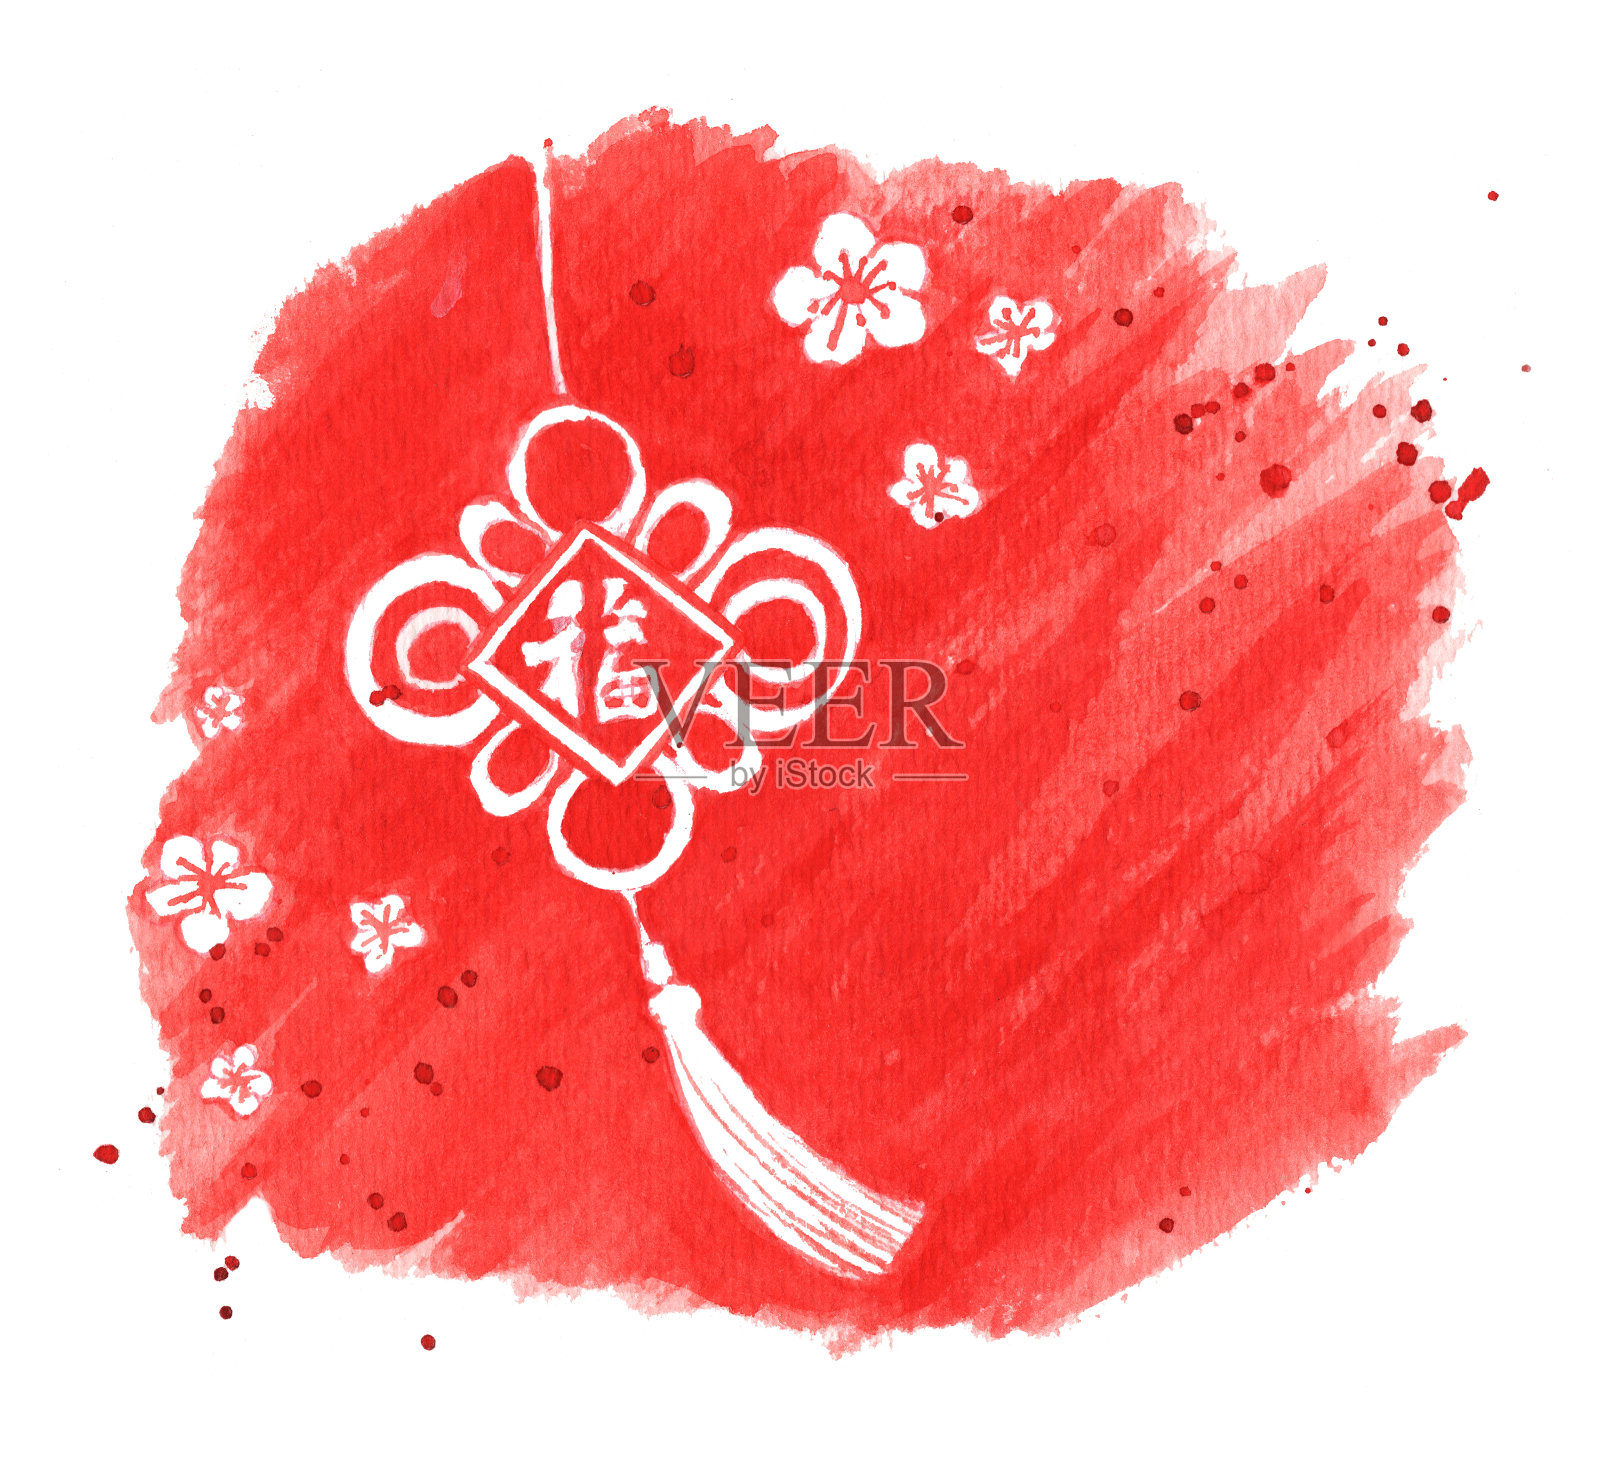 春节贺卡设计在红色背景与水彩笔触插画图片素材